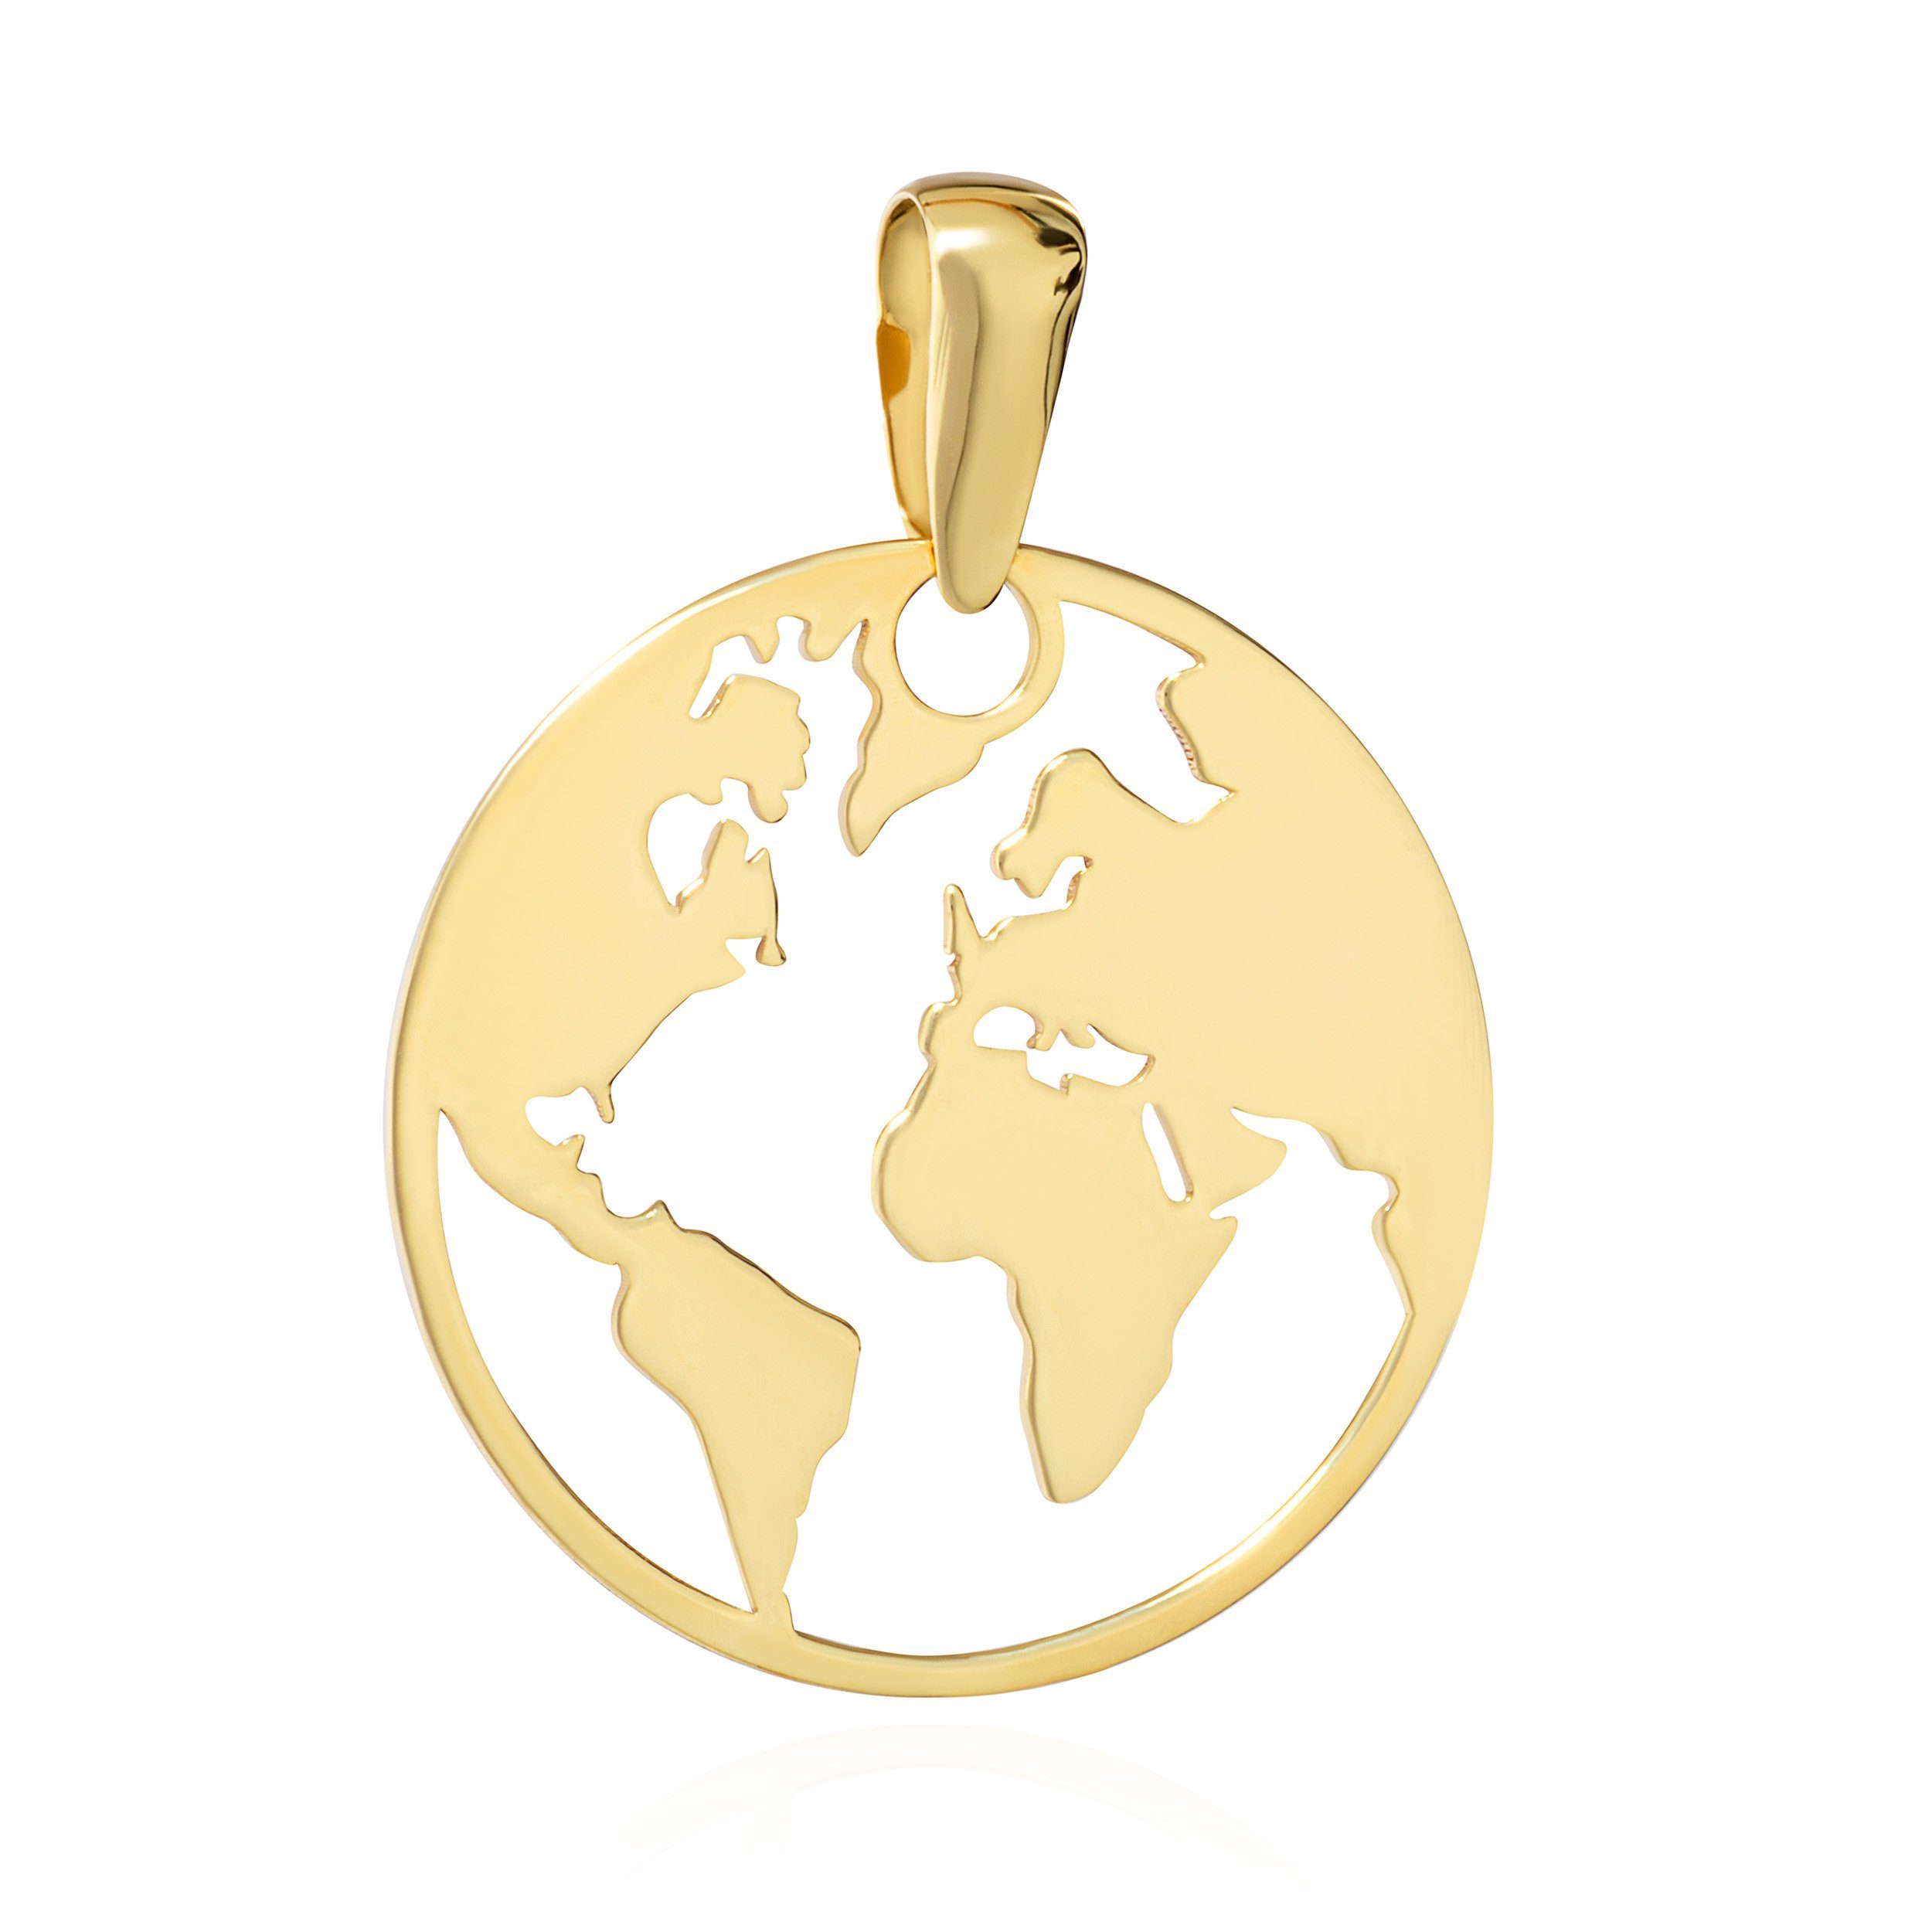 NKlaus Kettenanhänger Kettenanhänger Weltkugel 333 Gelb Gold 8 Karat 16 mm Globus Atlas Welt | Kettenanhänger